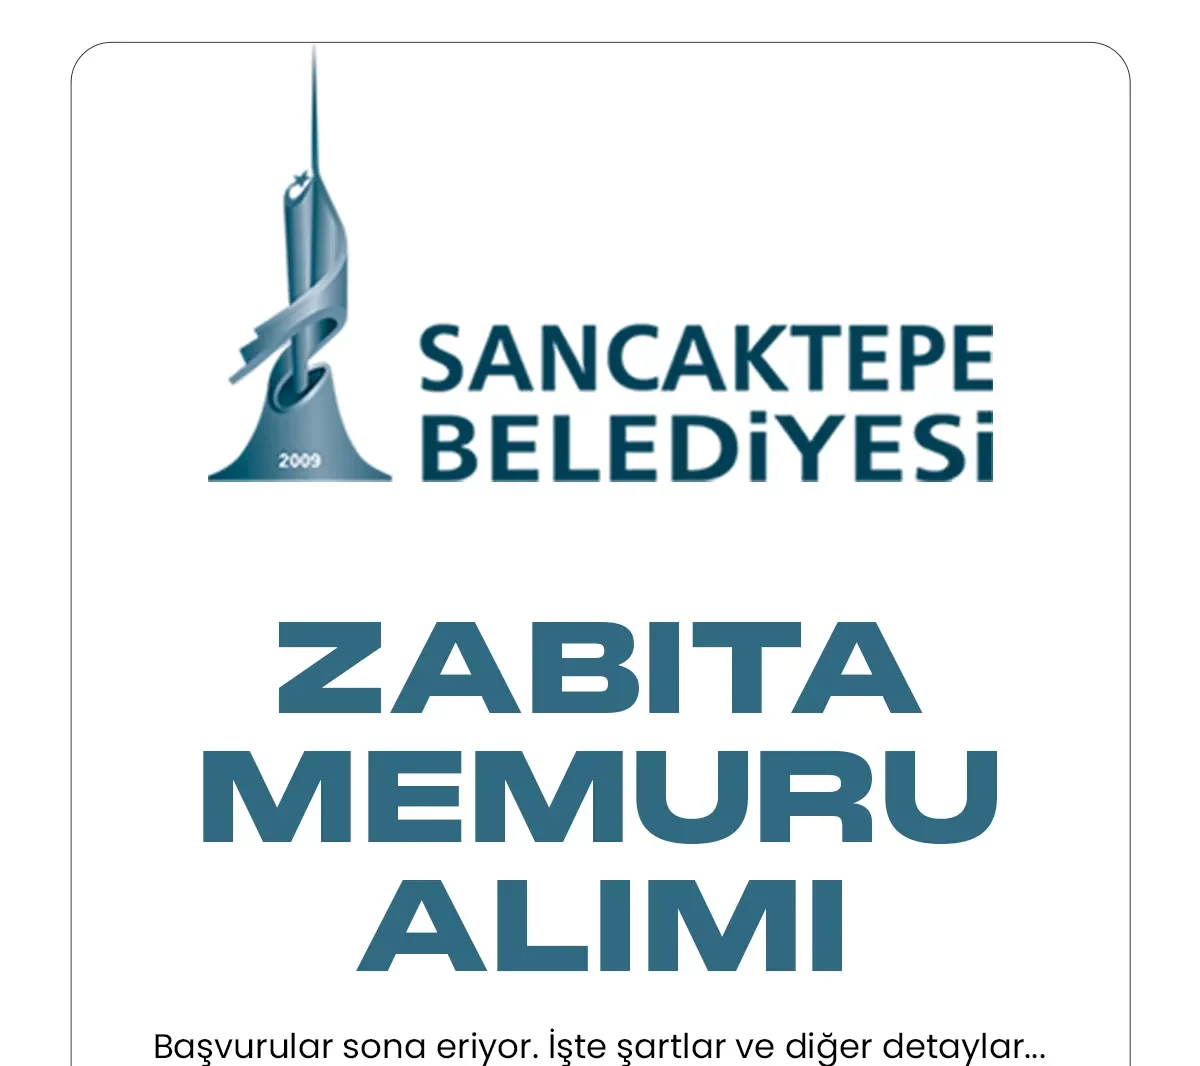 İstanbul Sancaktepe Belediyesi zabıta memuru alımı başvuru sürecinde sona gelindi.